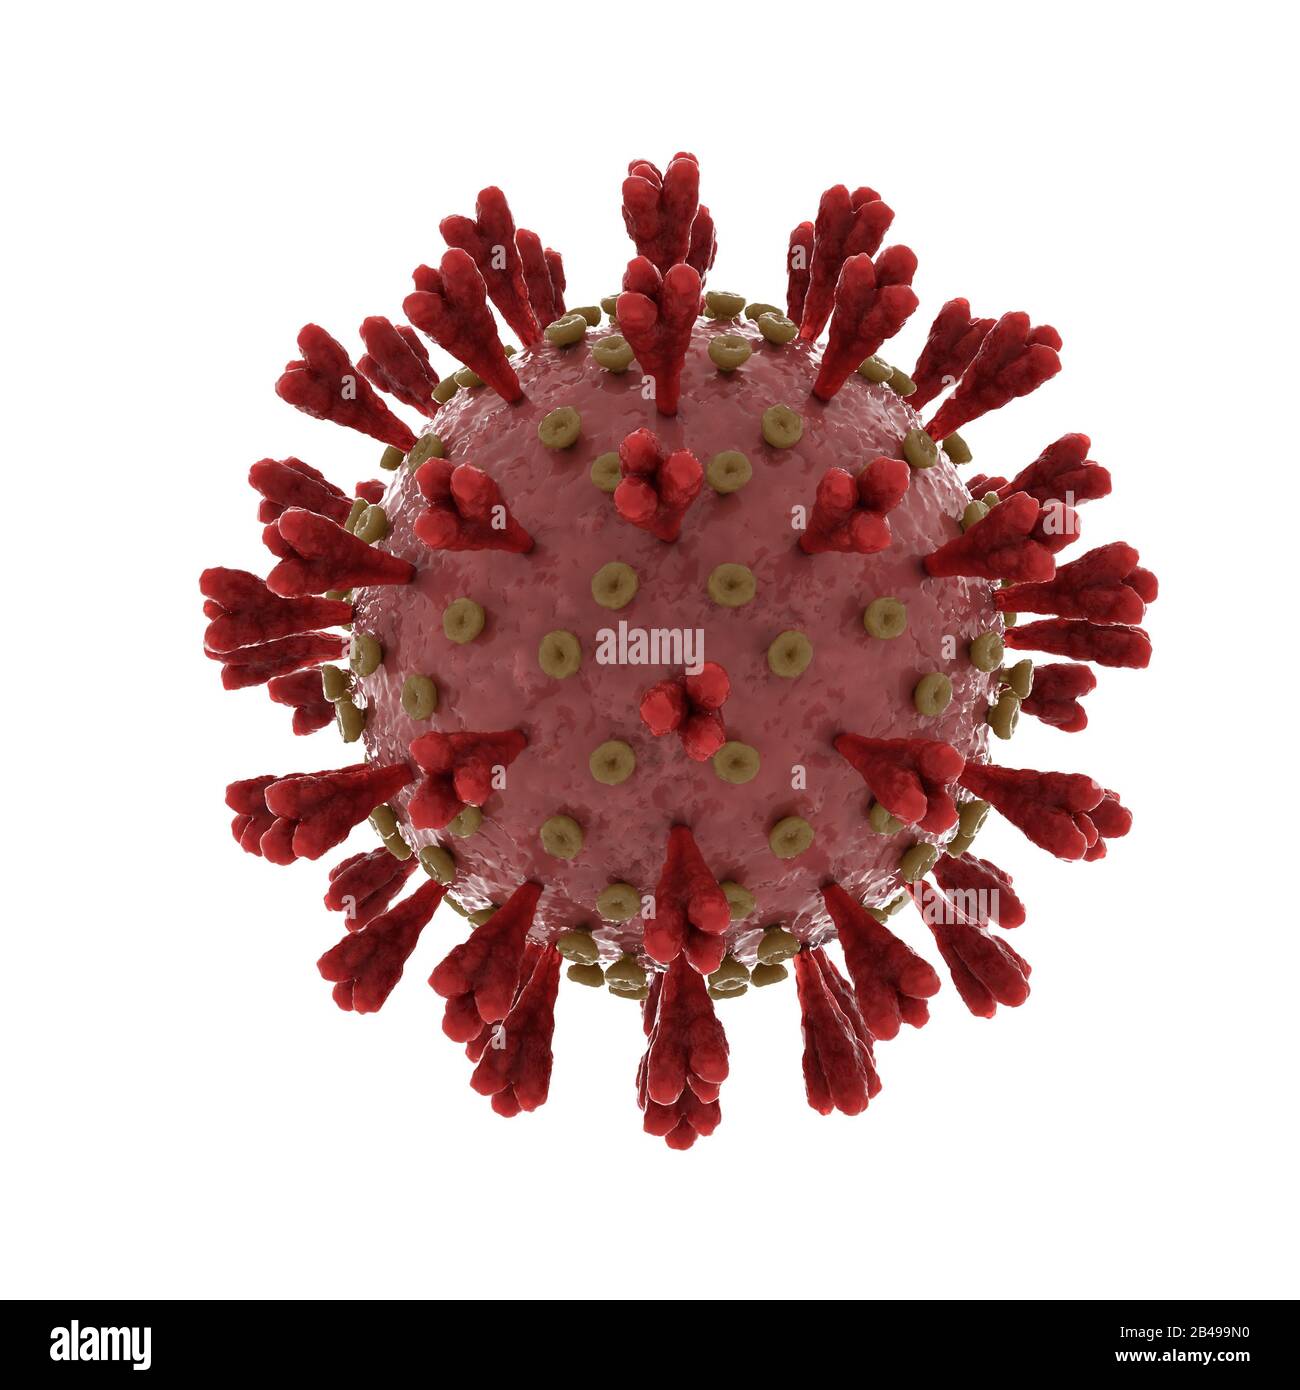 Síndrome respiratorio agudo severo coronavirus 2 que causa covid 19 en blanco Foto de stock